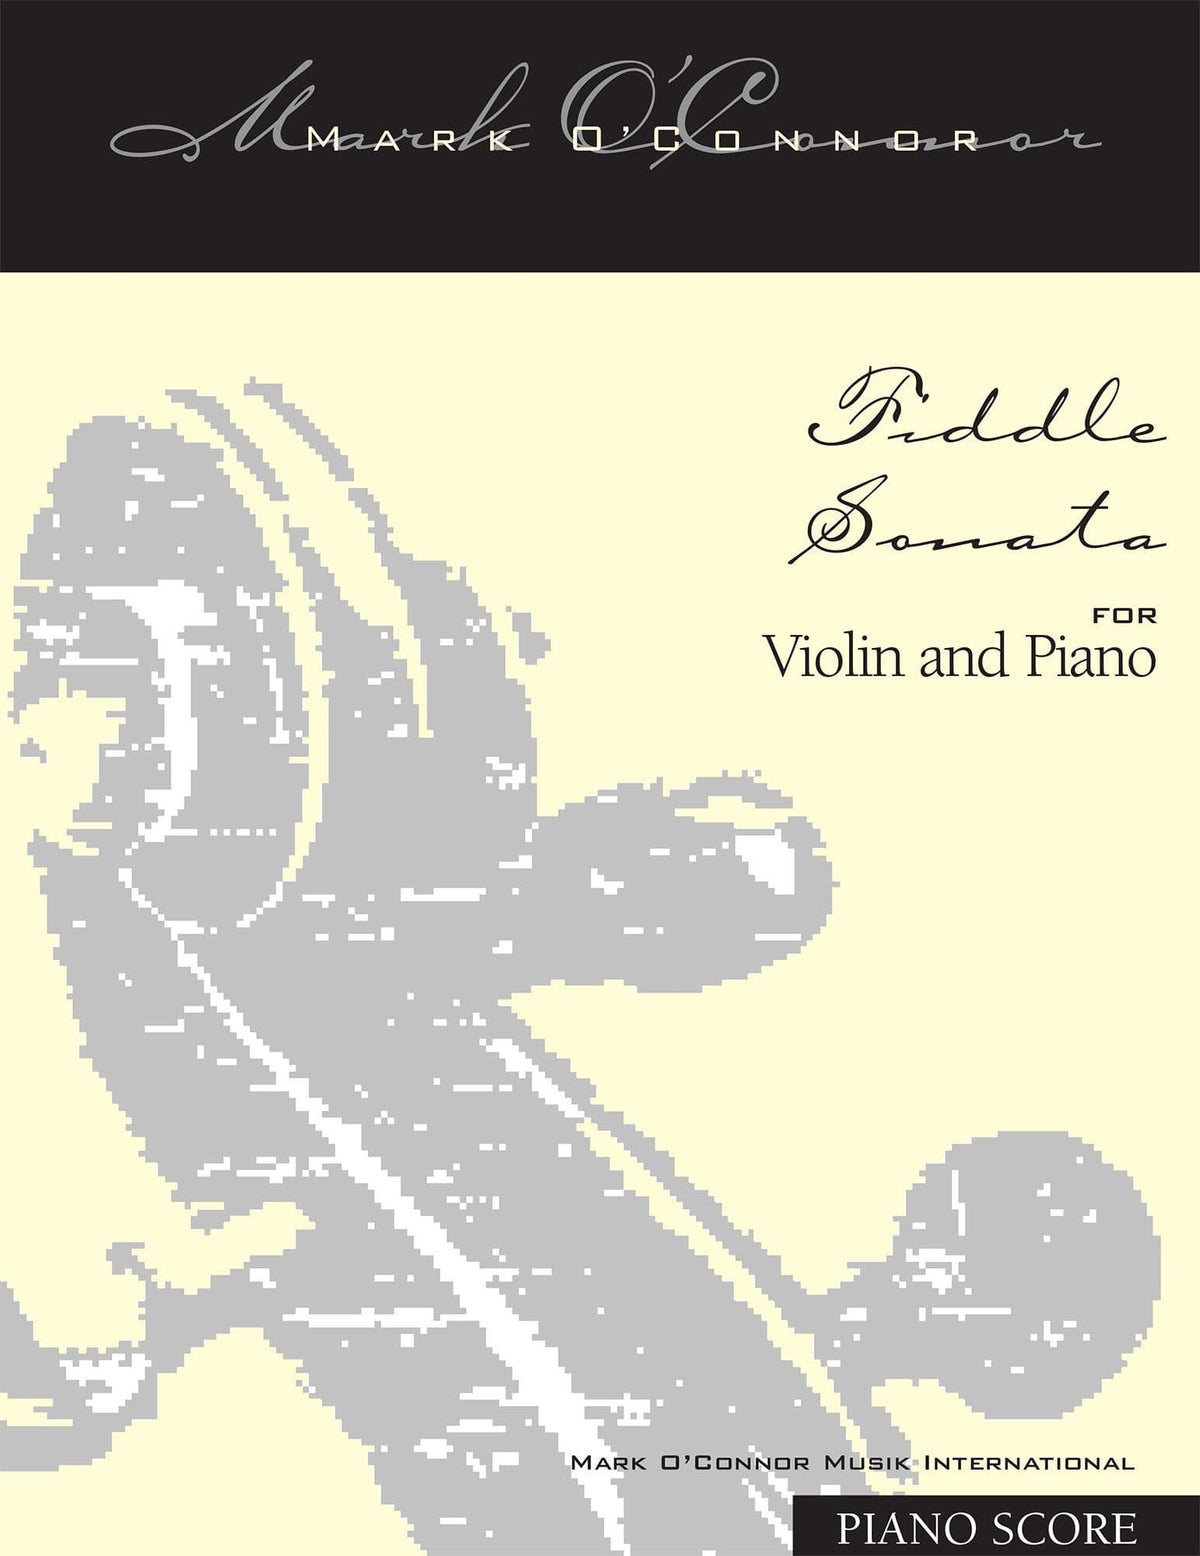 O'Connor, Mark - Fiddle Sonata for Violin and Piano - Piano Score - Digital Download